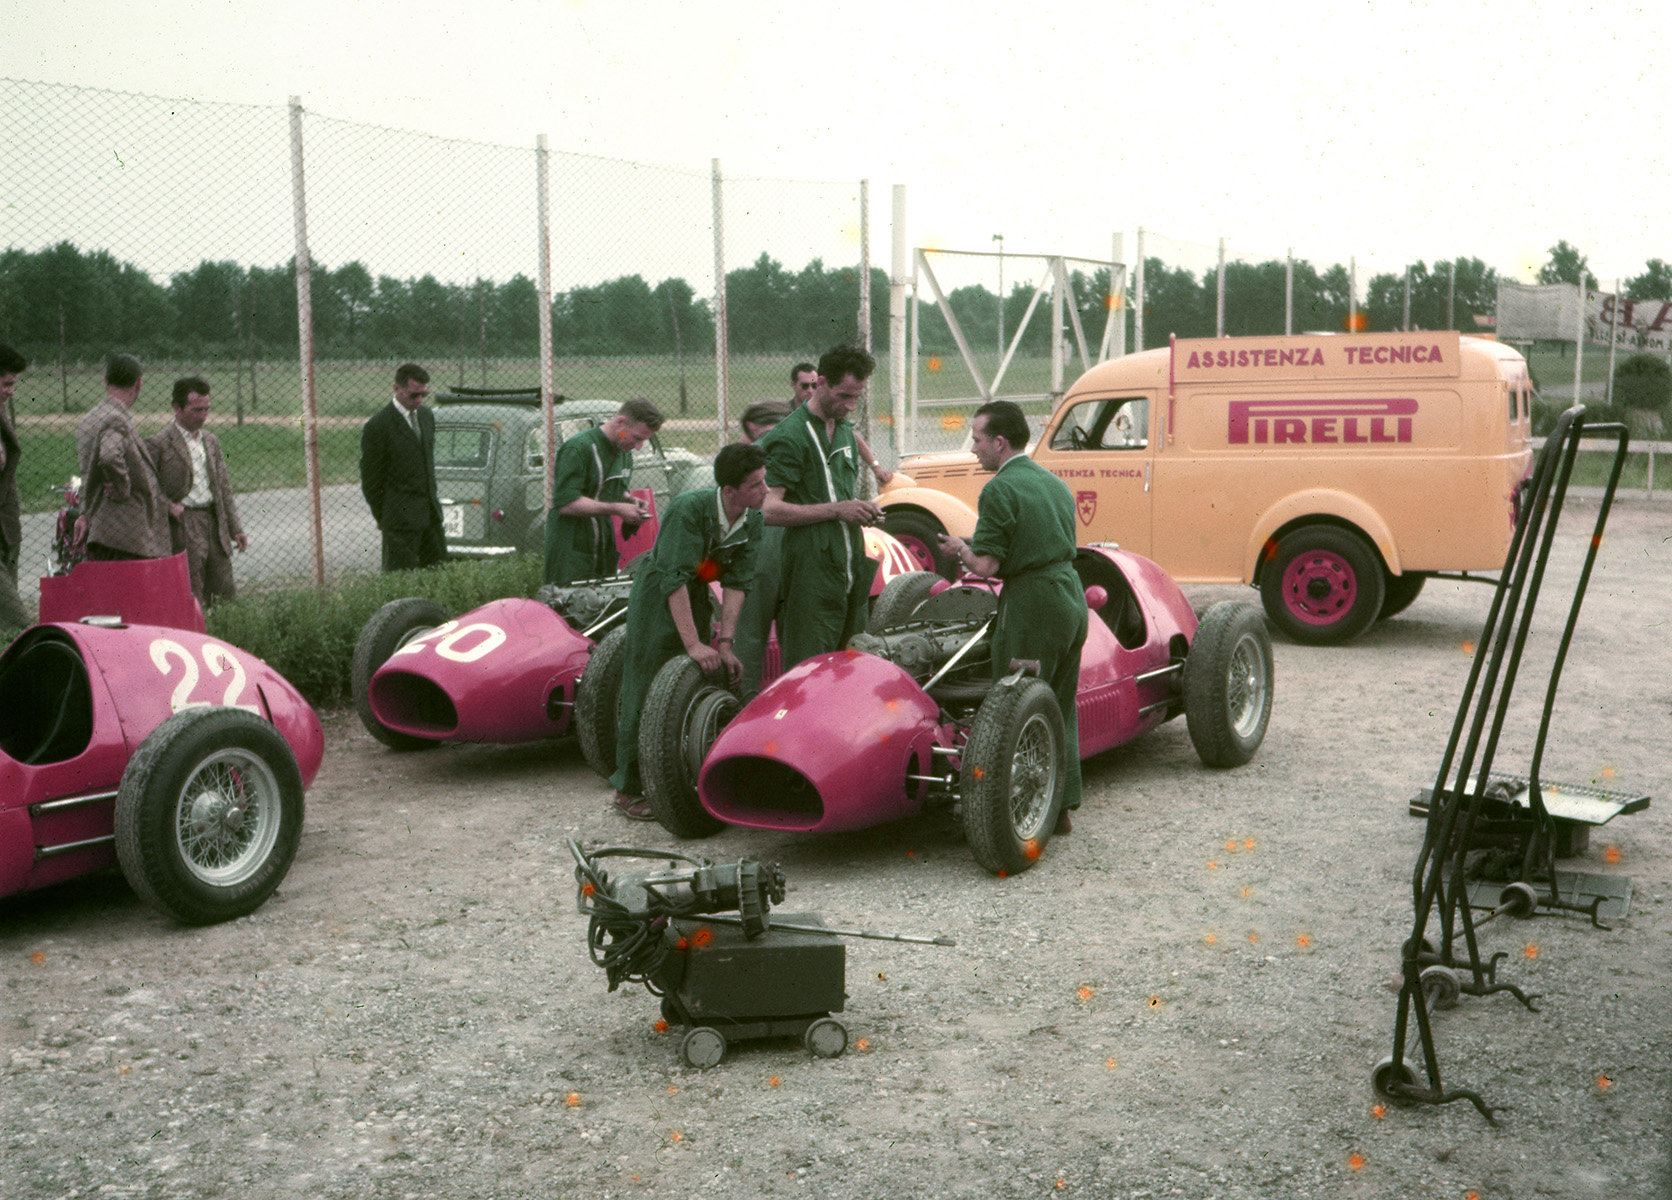 Technická asistence Pirelli při Velké ceně Itálie 1952